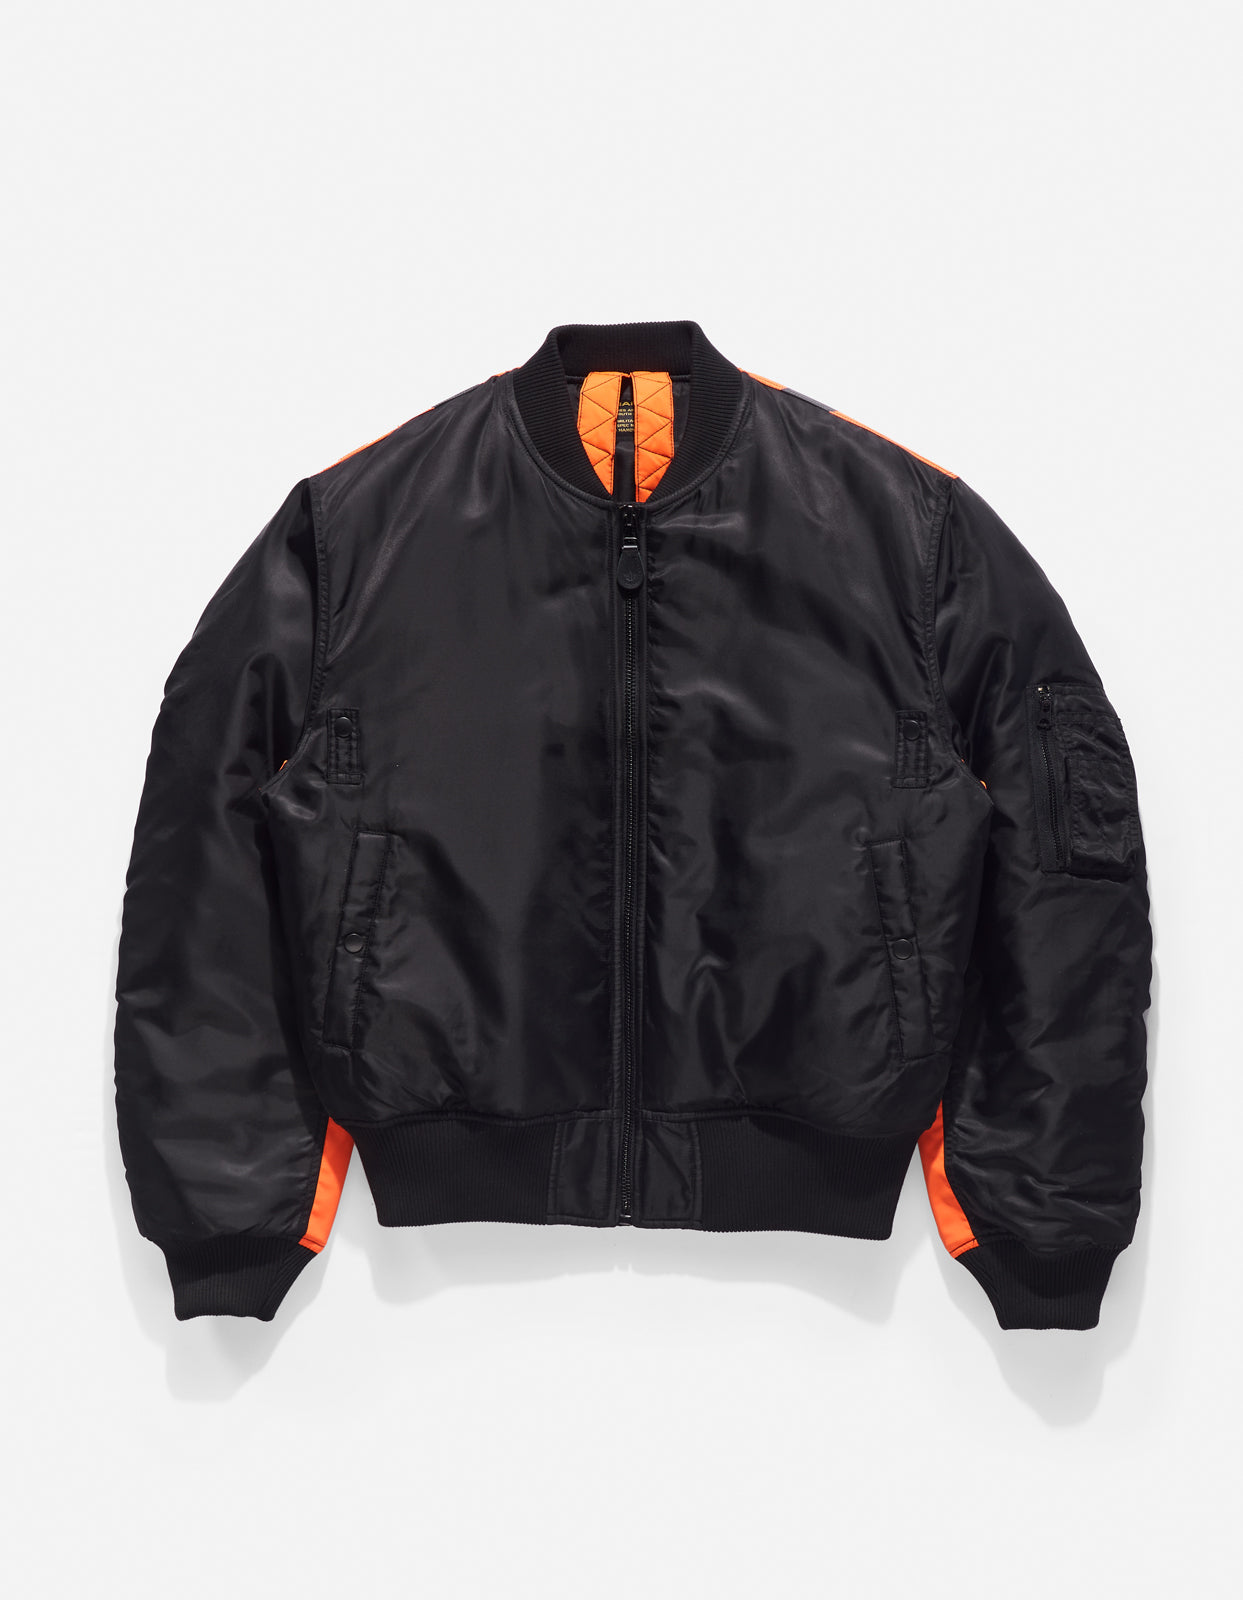 4595 Hi-Vis MA-1 Flight Jacket Black/Neon Orange